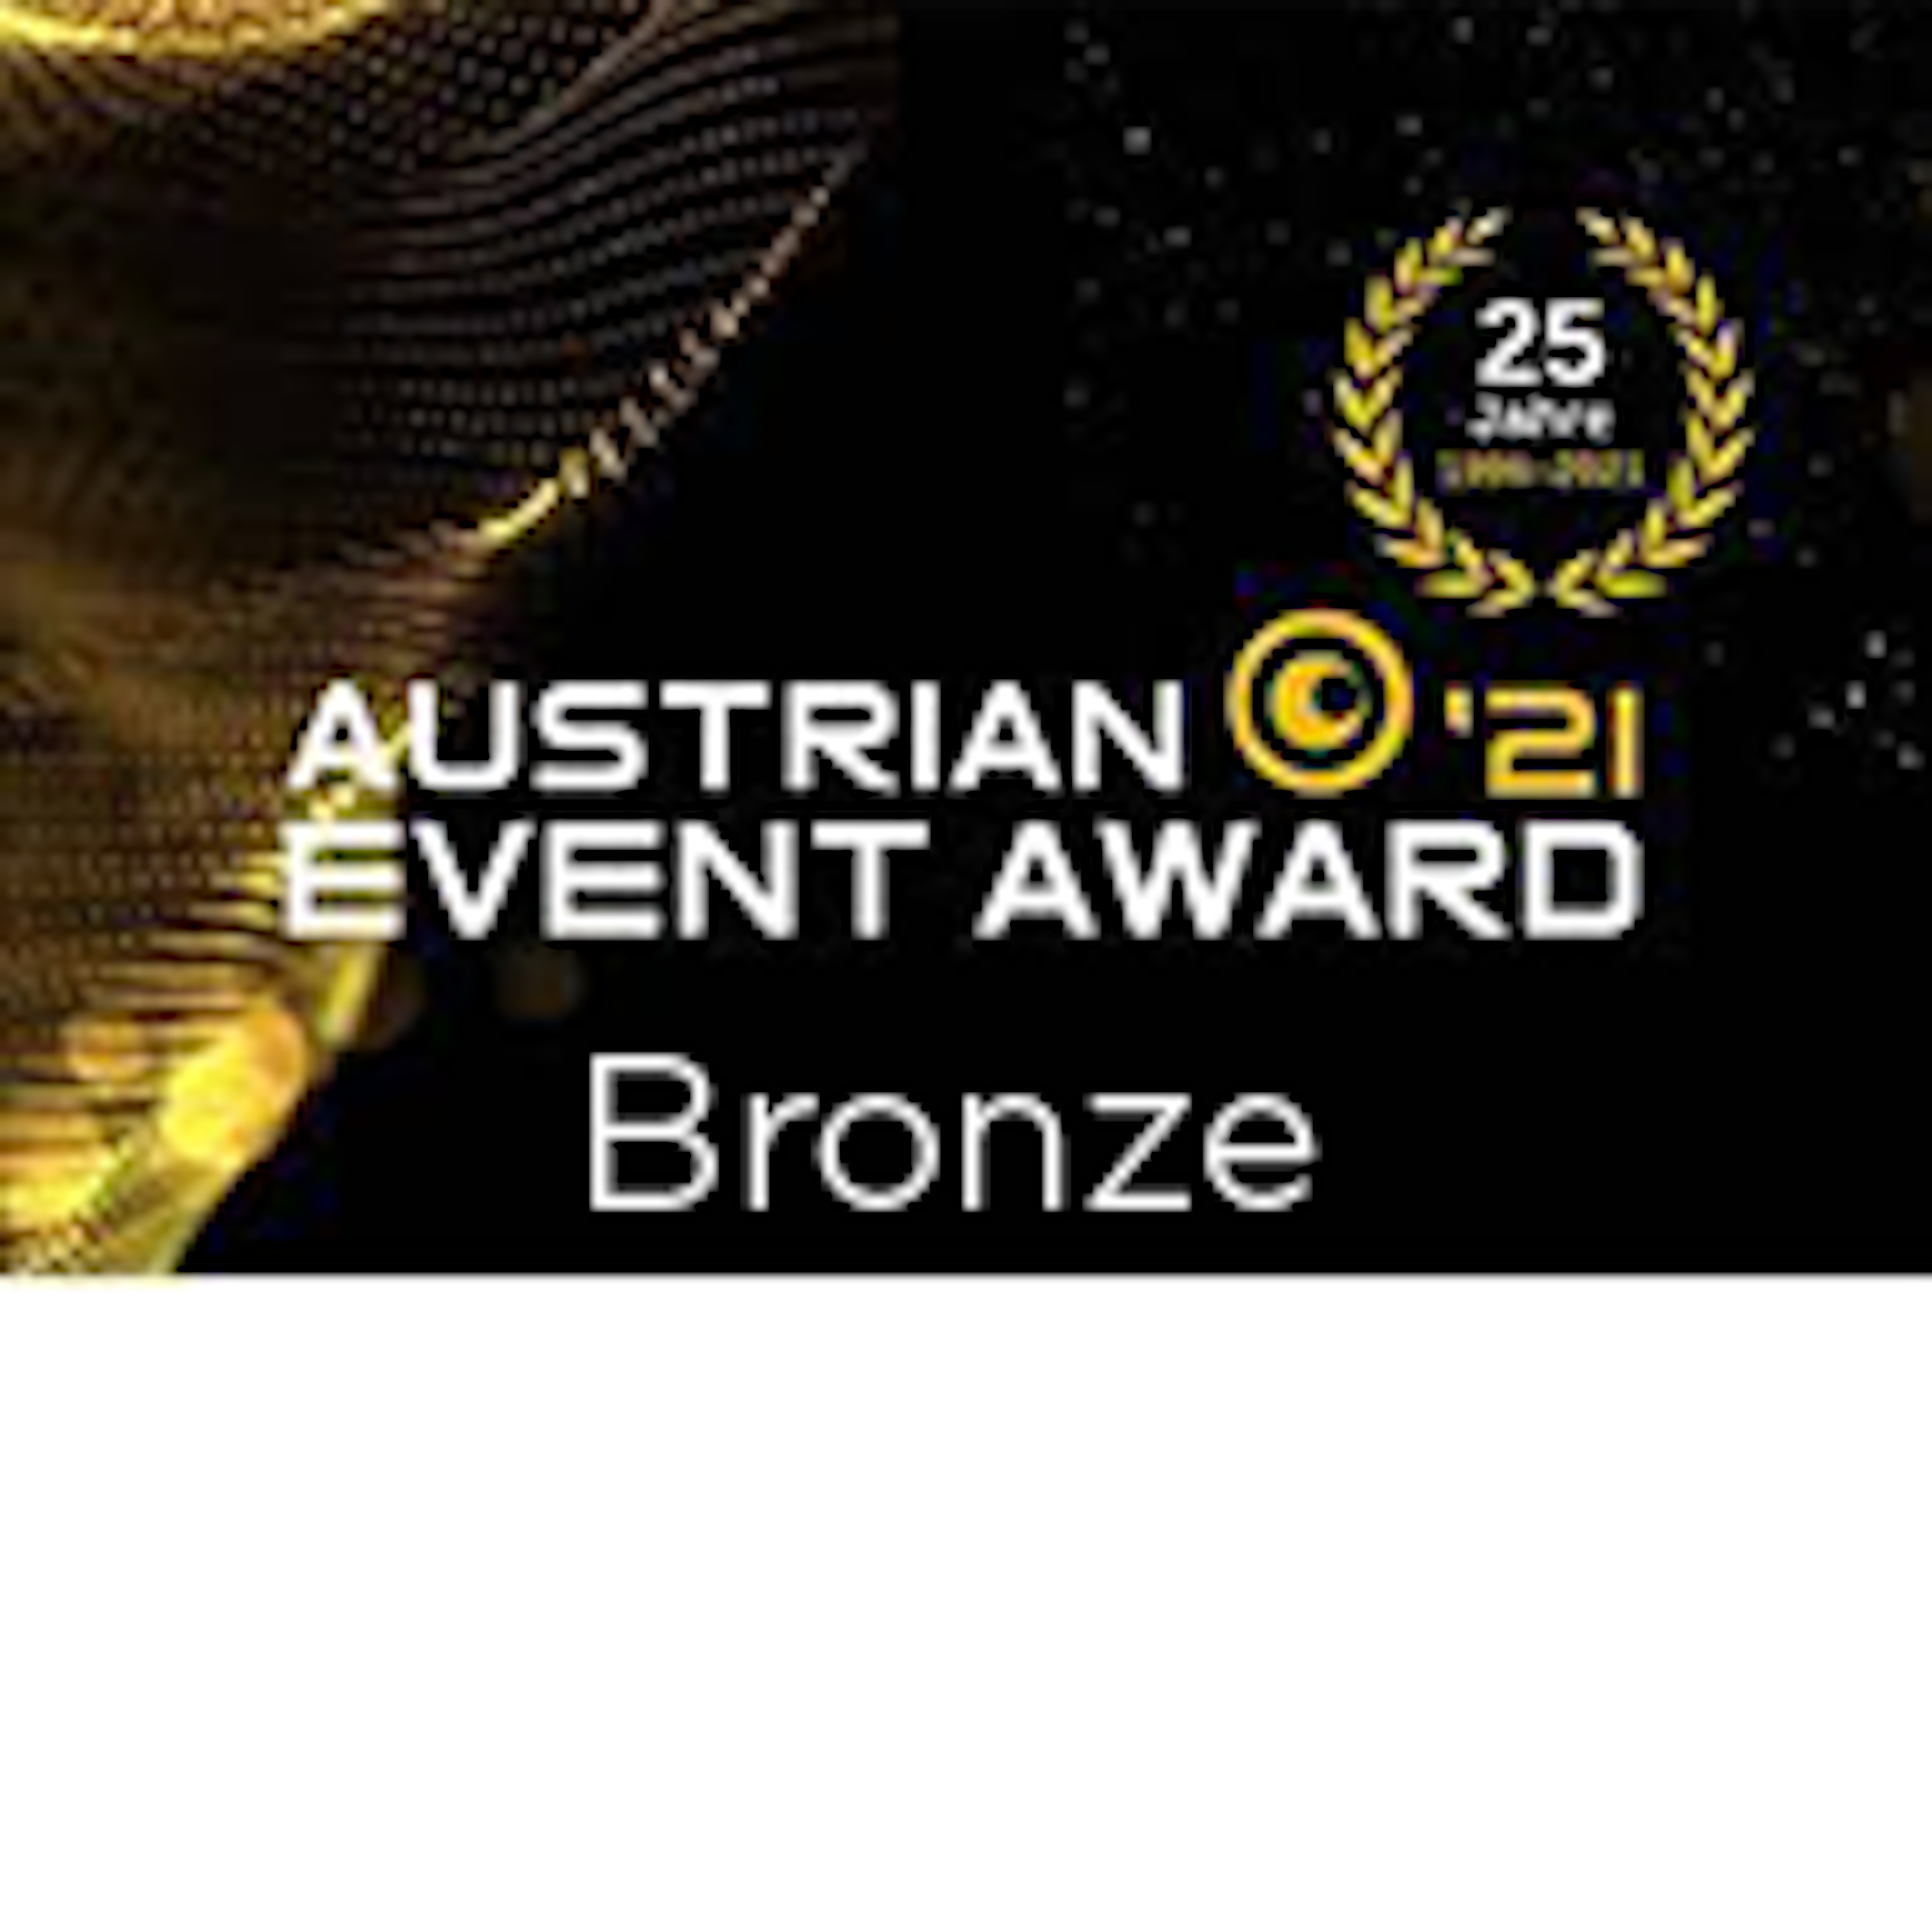 Logo: Austrian Event Awards 2021